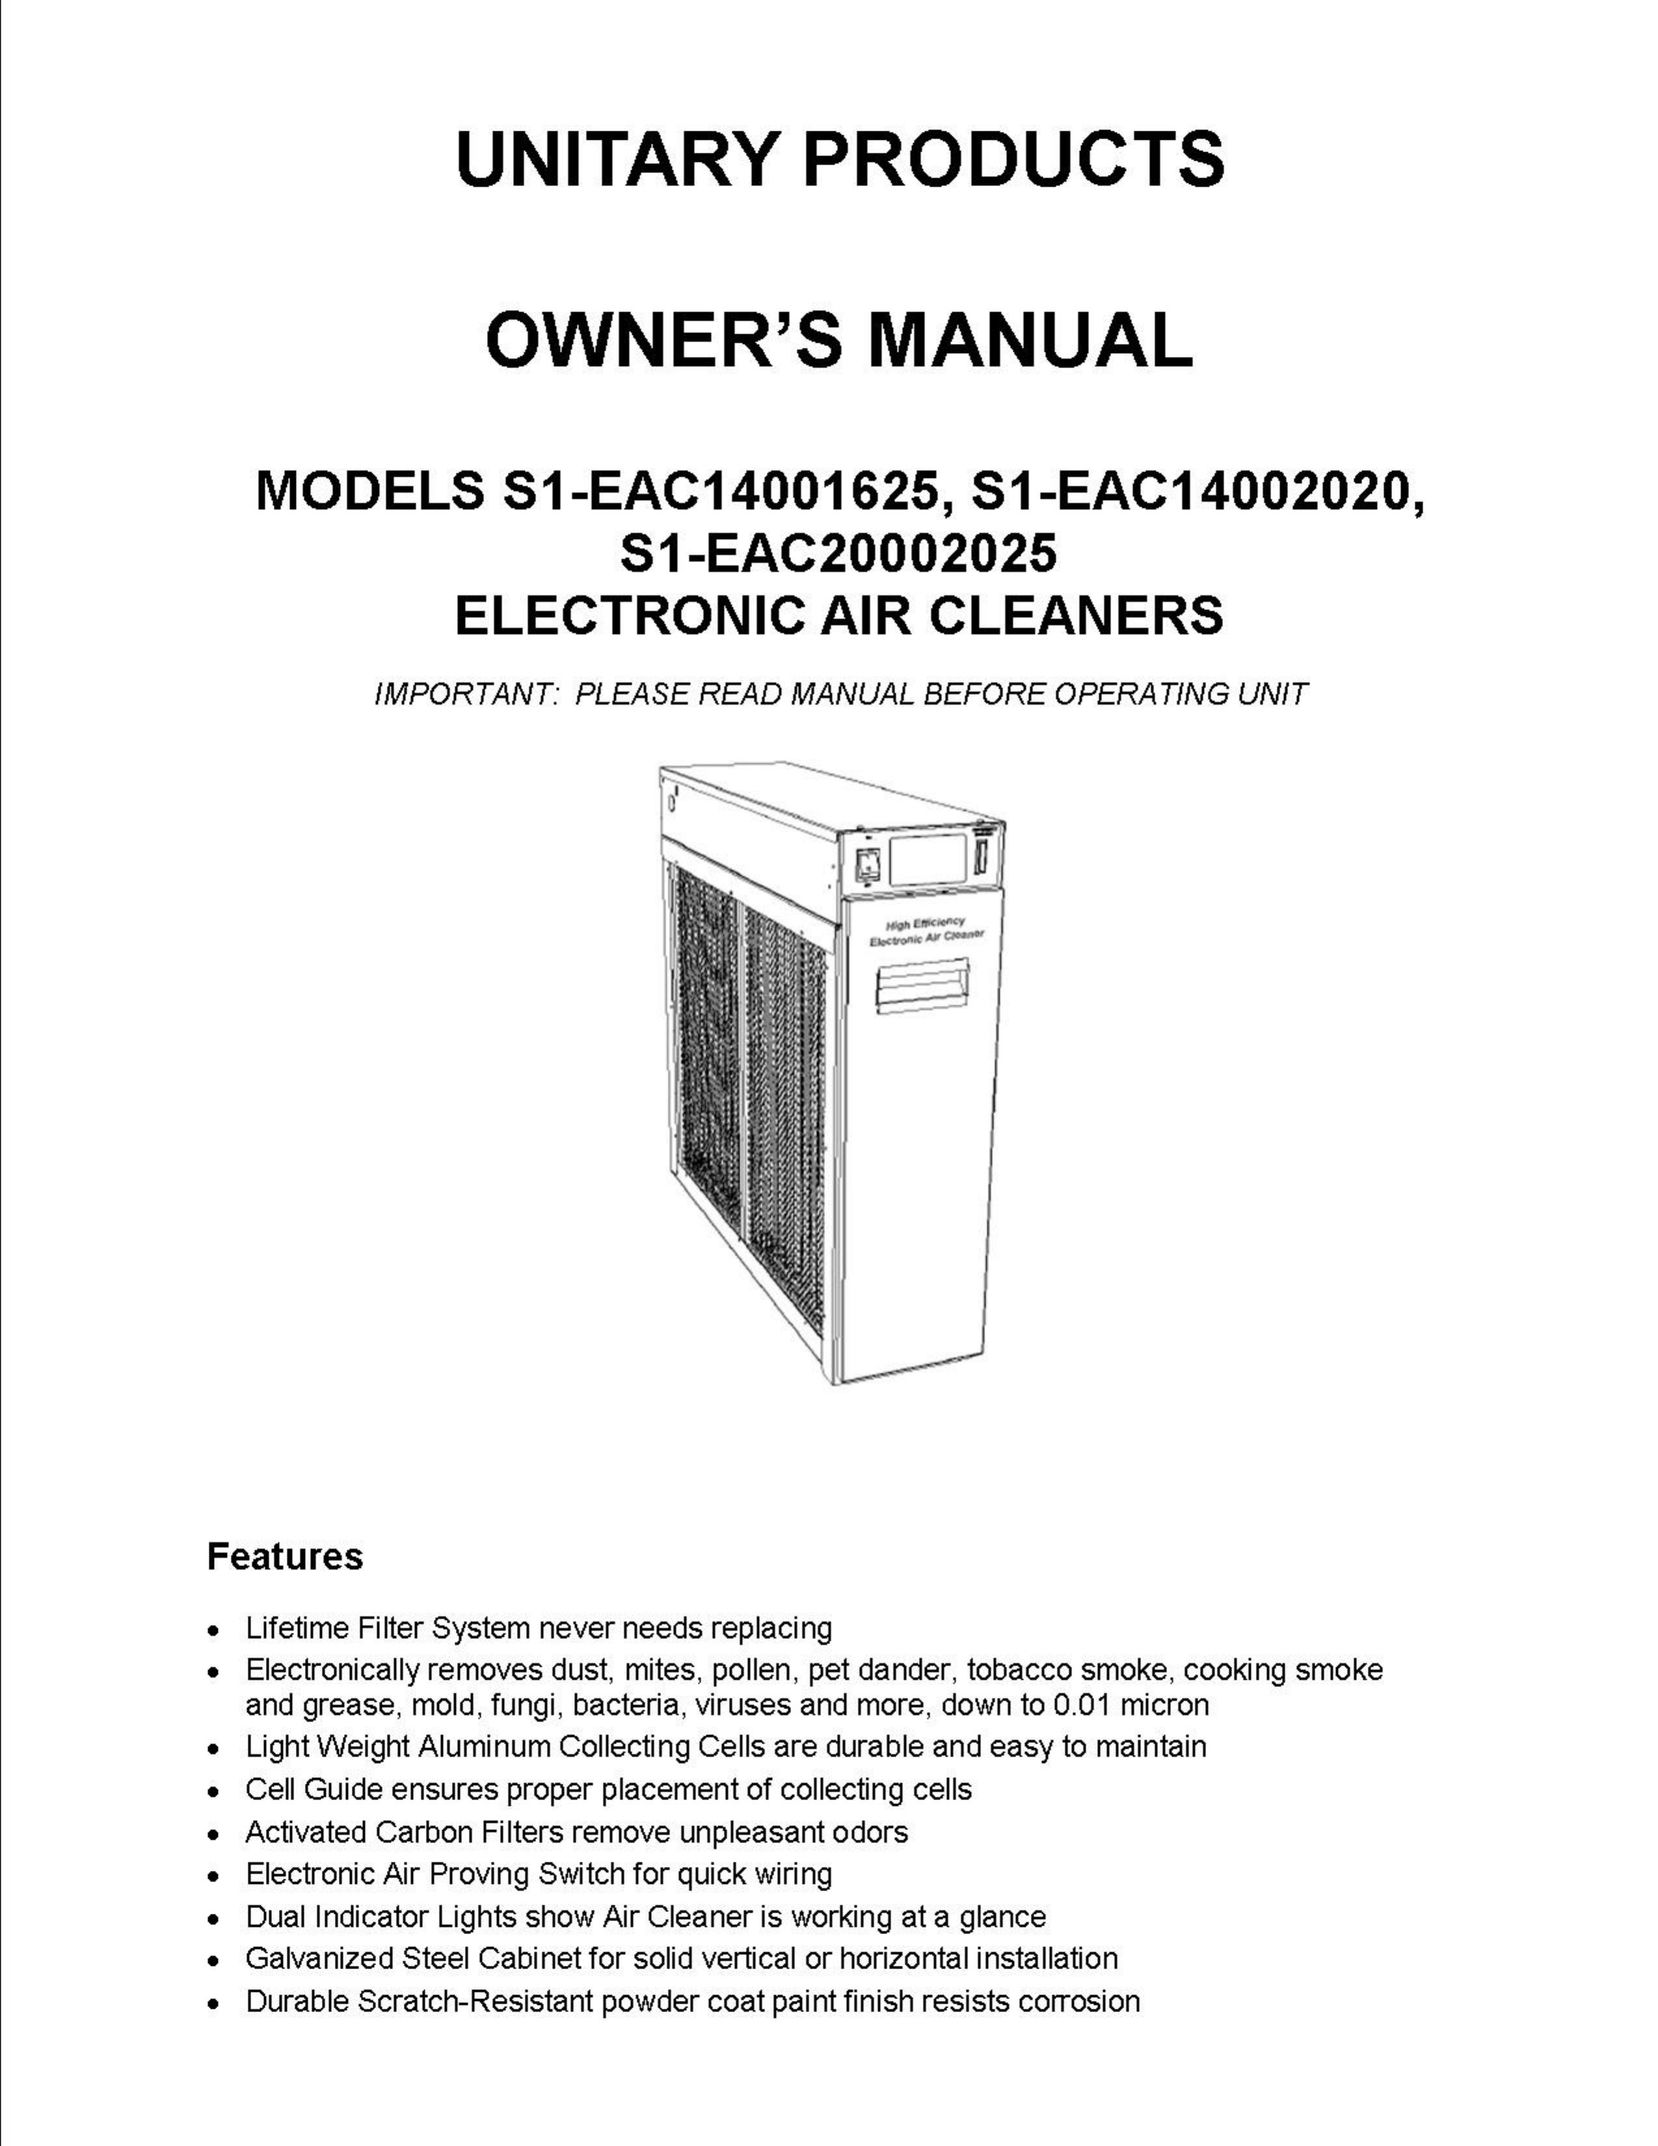 Fedders S1-EAC20002025 Air Cleaner User Manual